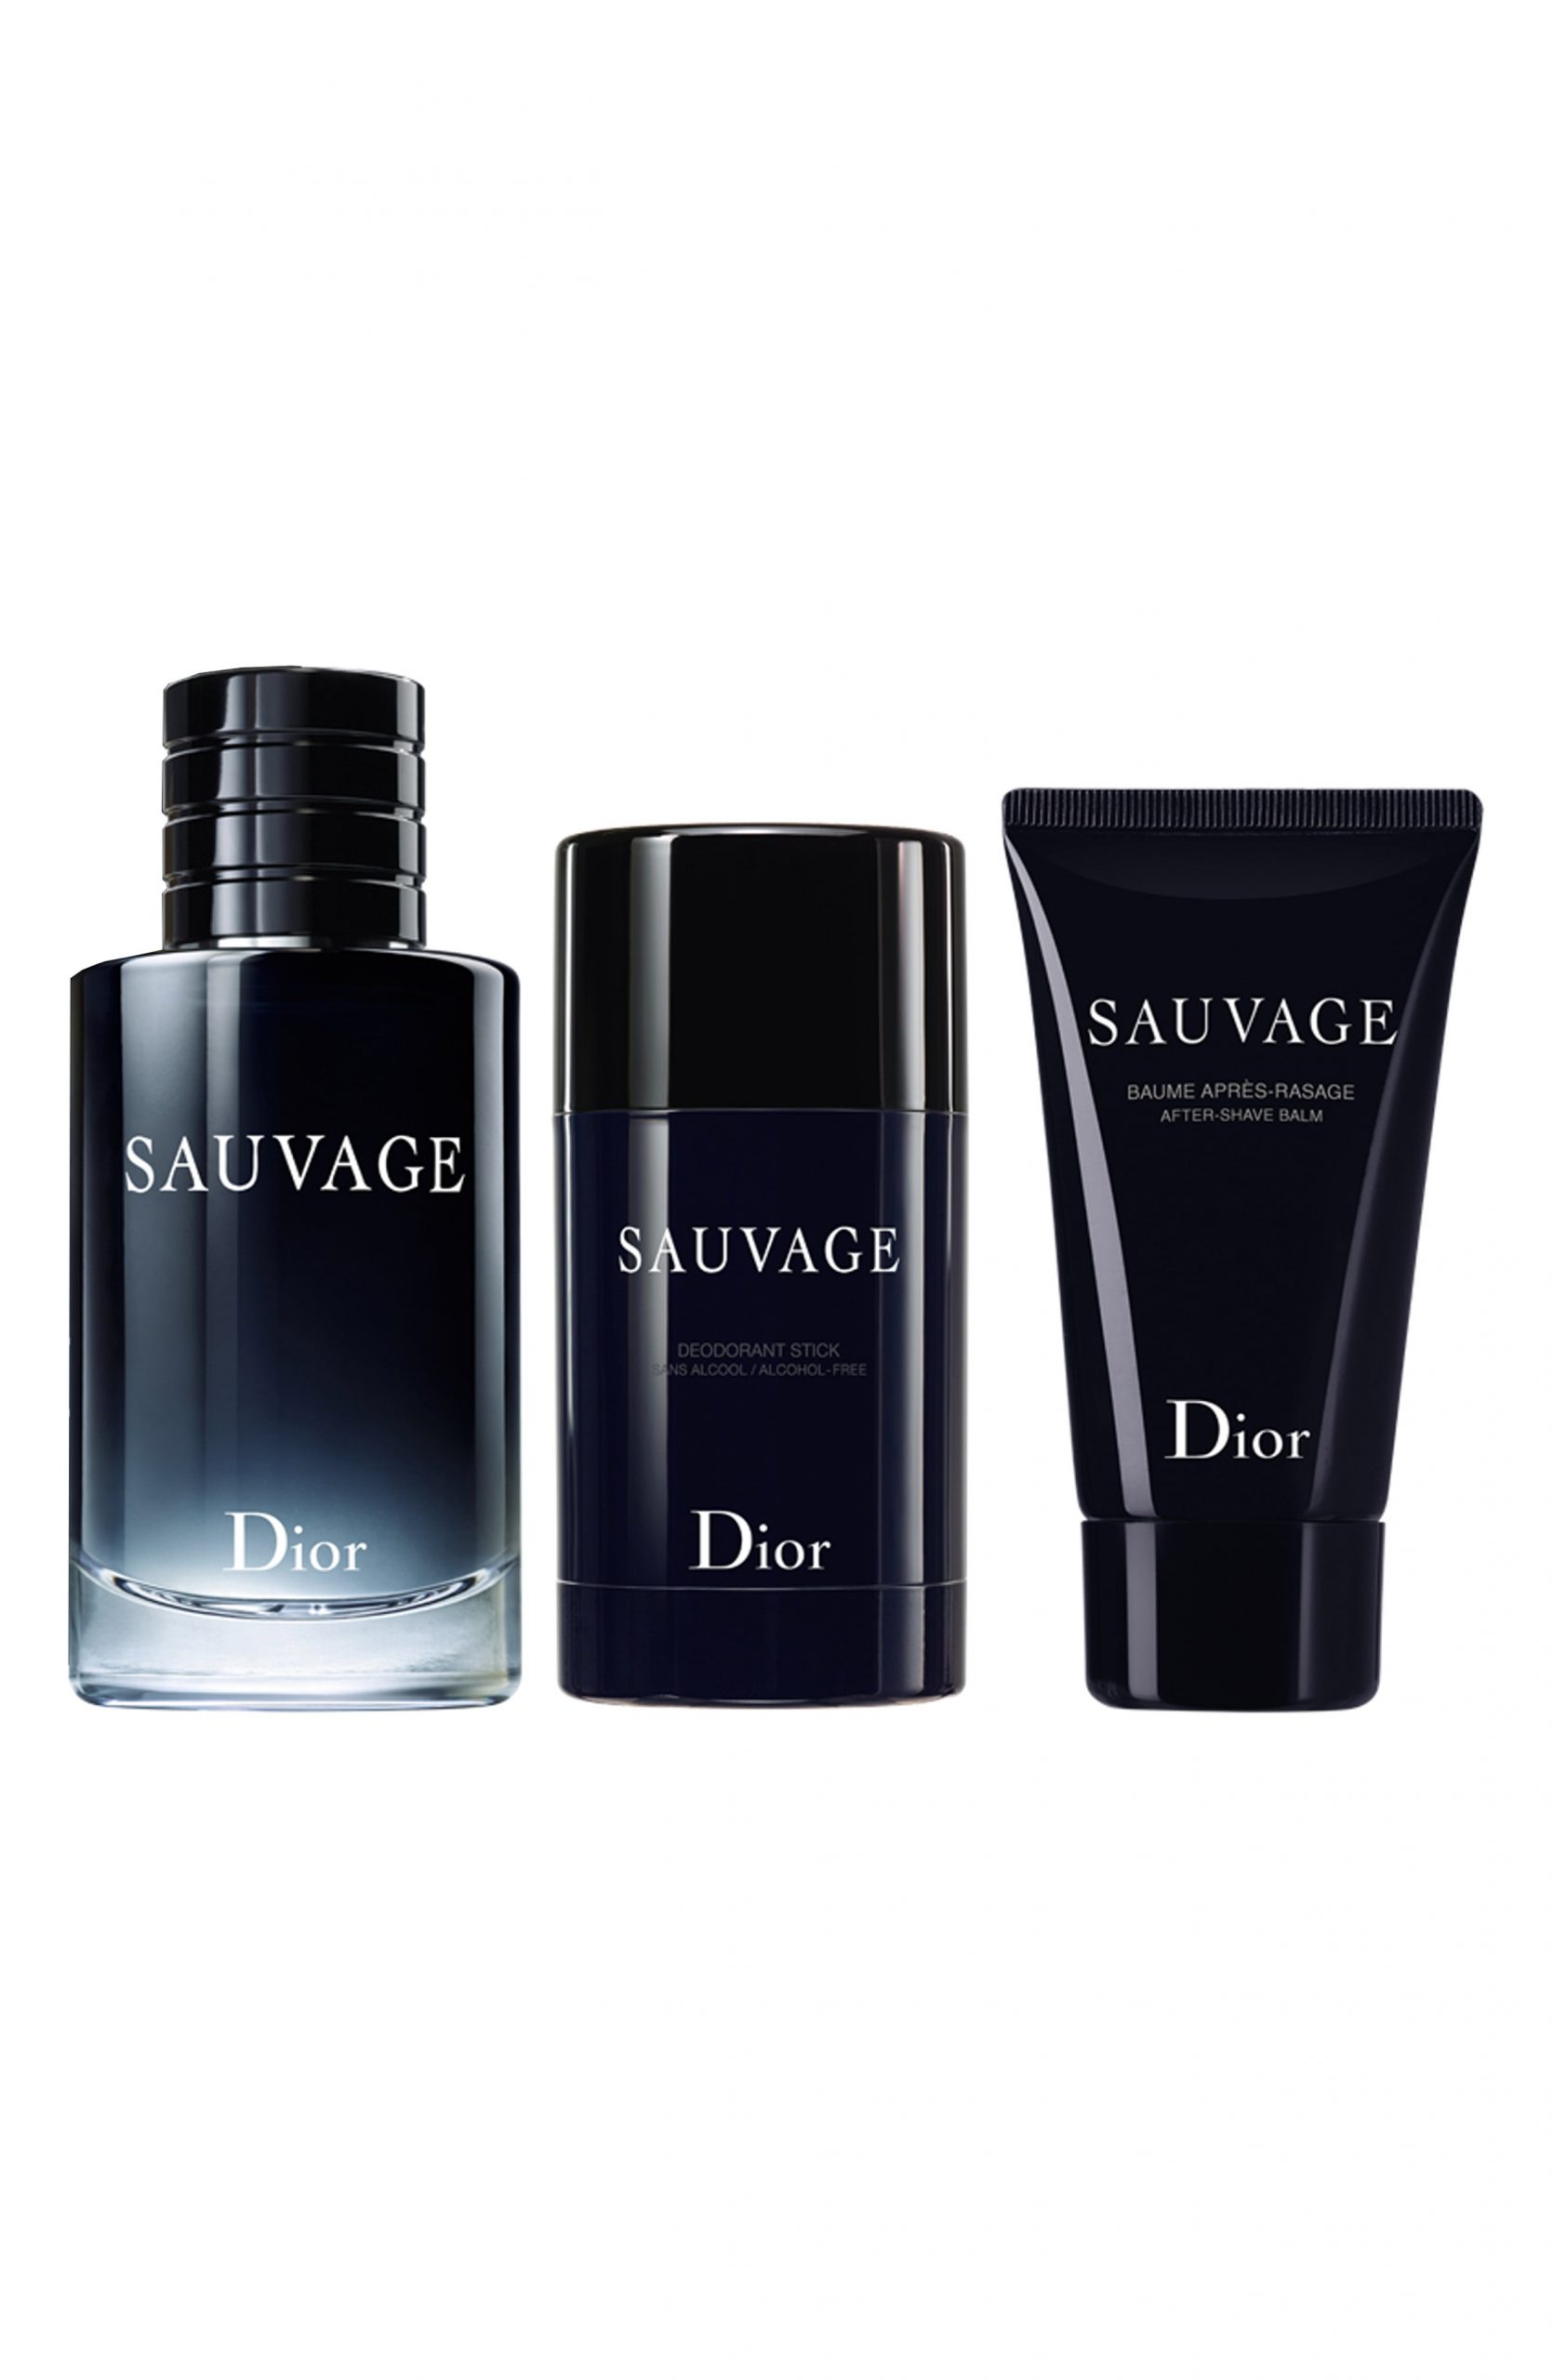 sauvage dior box set